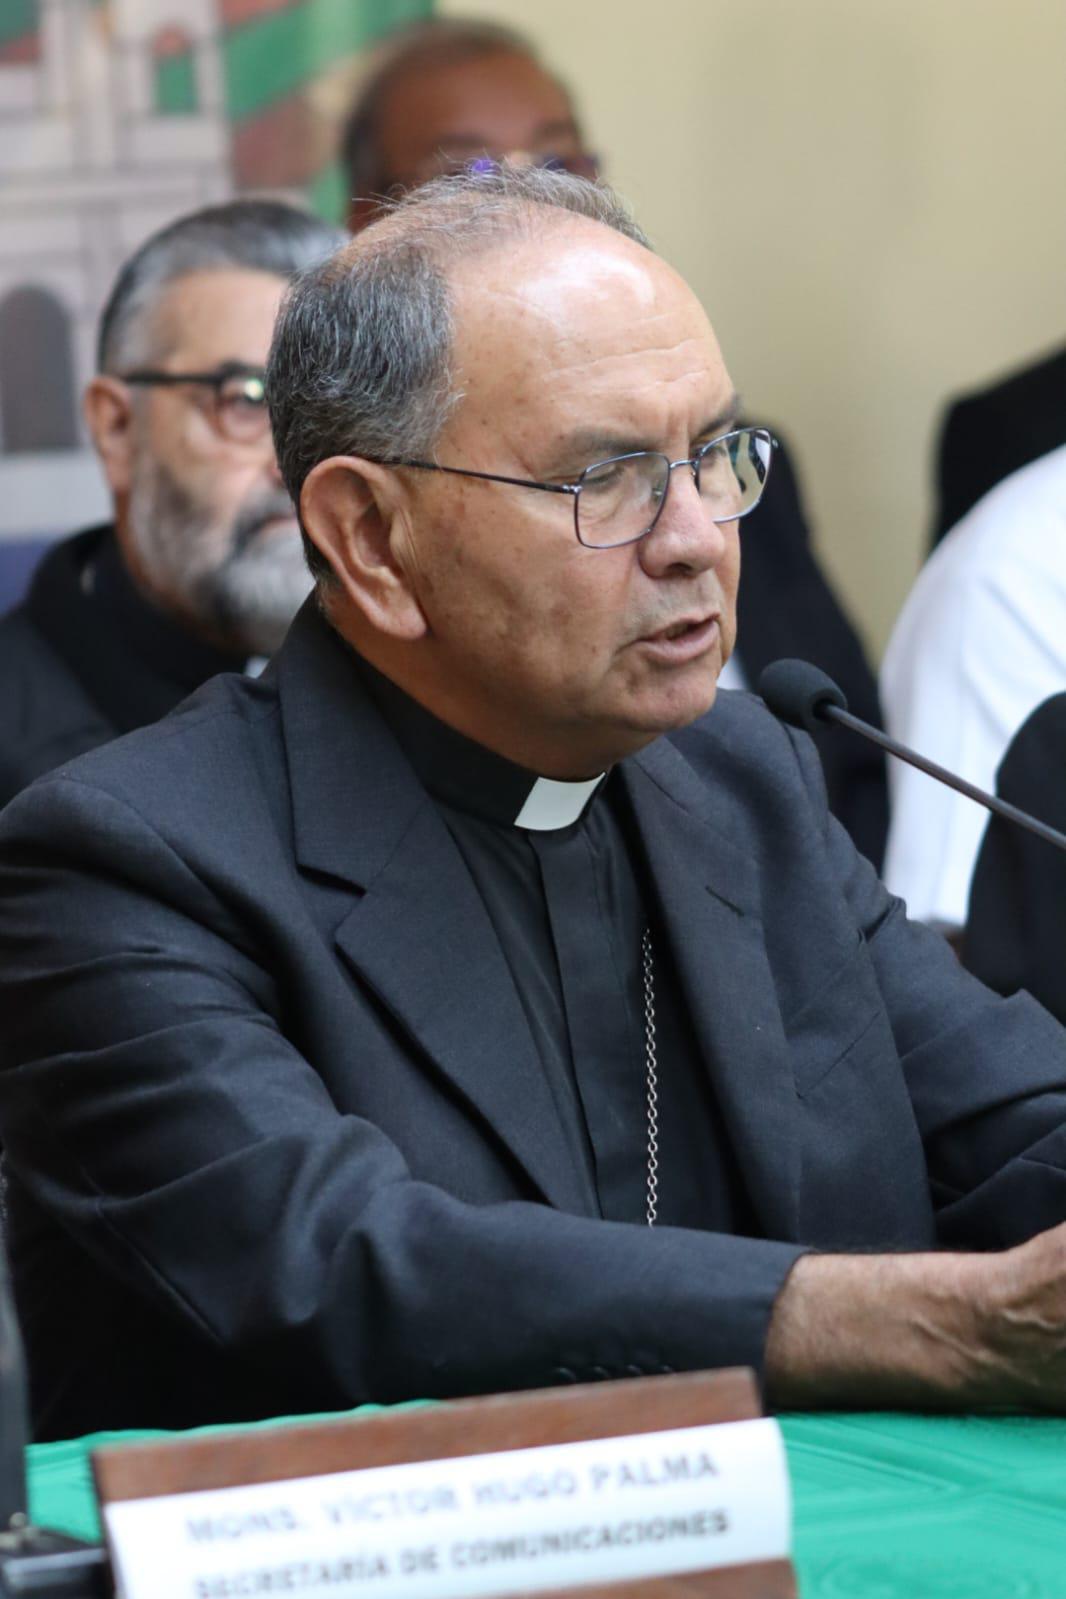 Comunicado de la Conferencia Episcopal de Guatemala con ocasión de su asamblea plenaria anual 2024